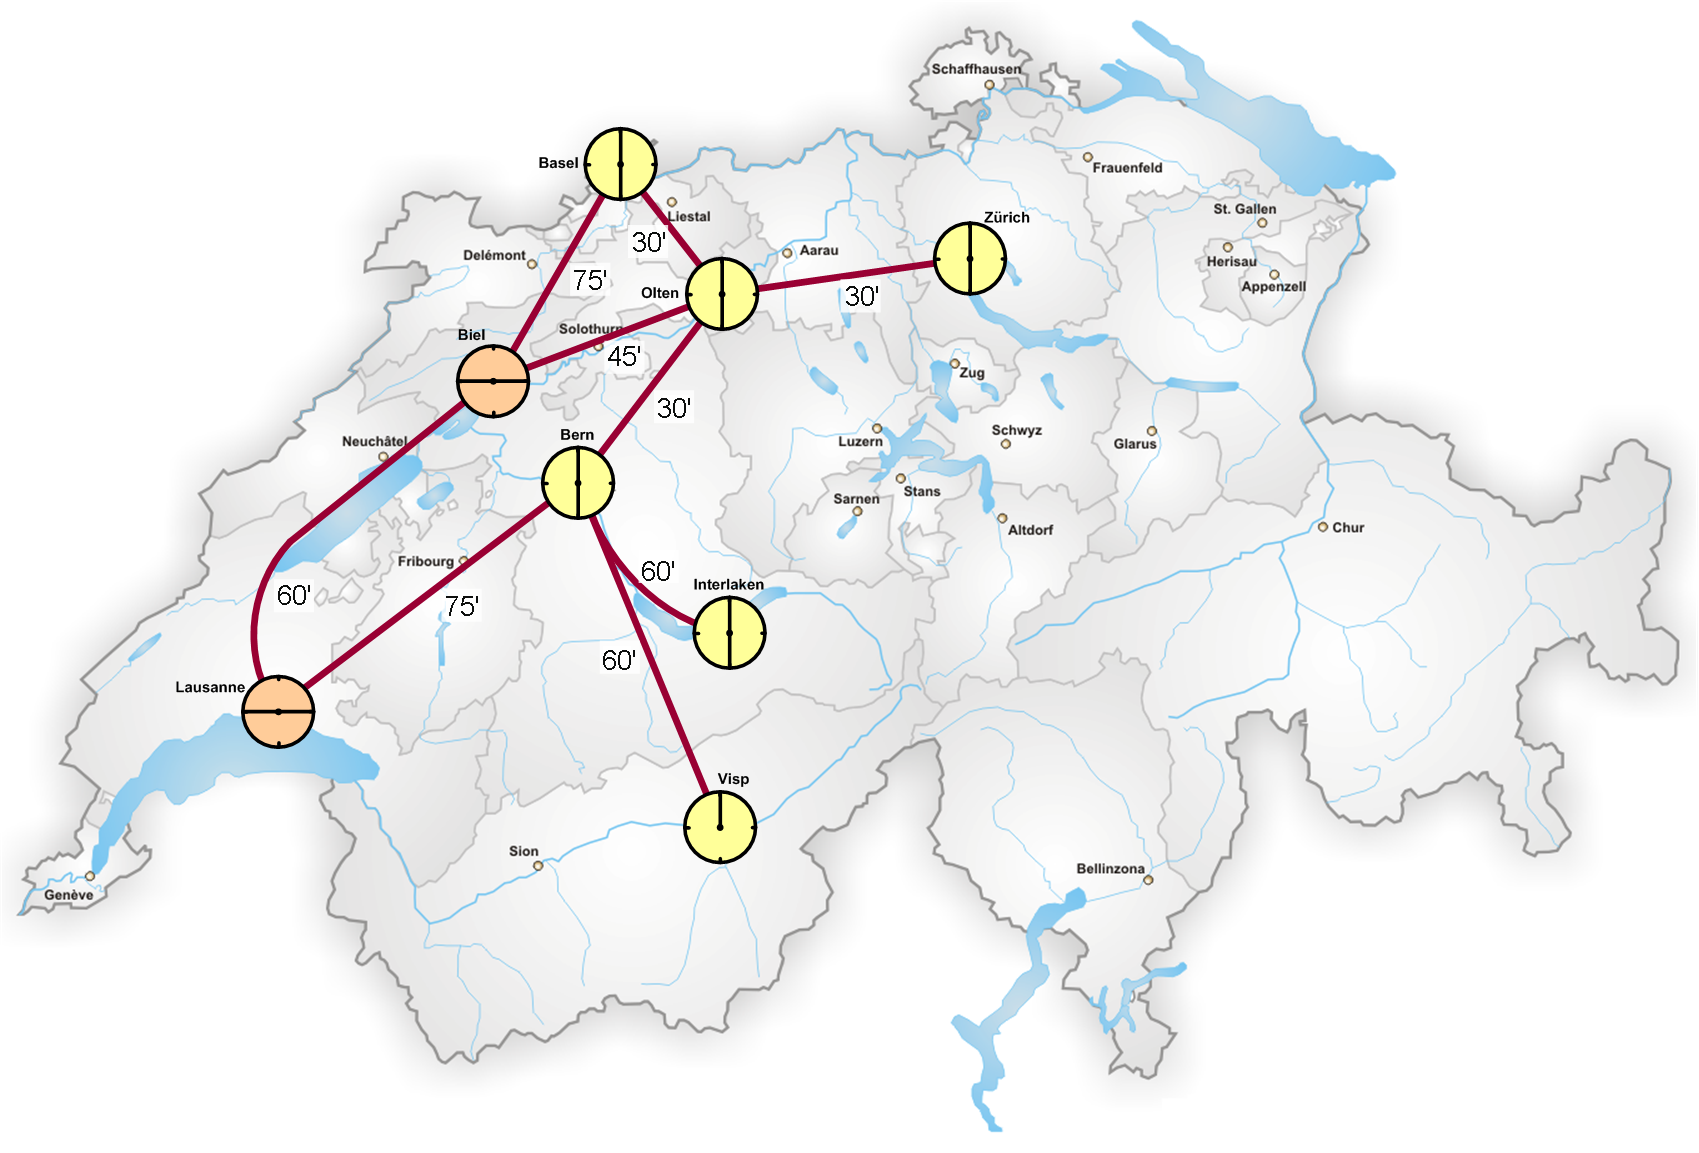 Knotensystem der Schweiz mit Lötschberg-Basistunnel (2007)